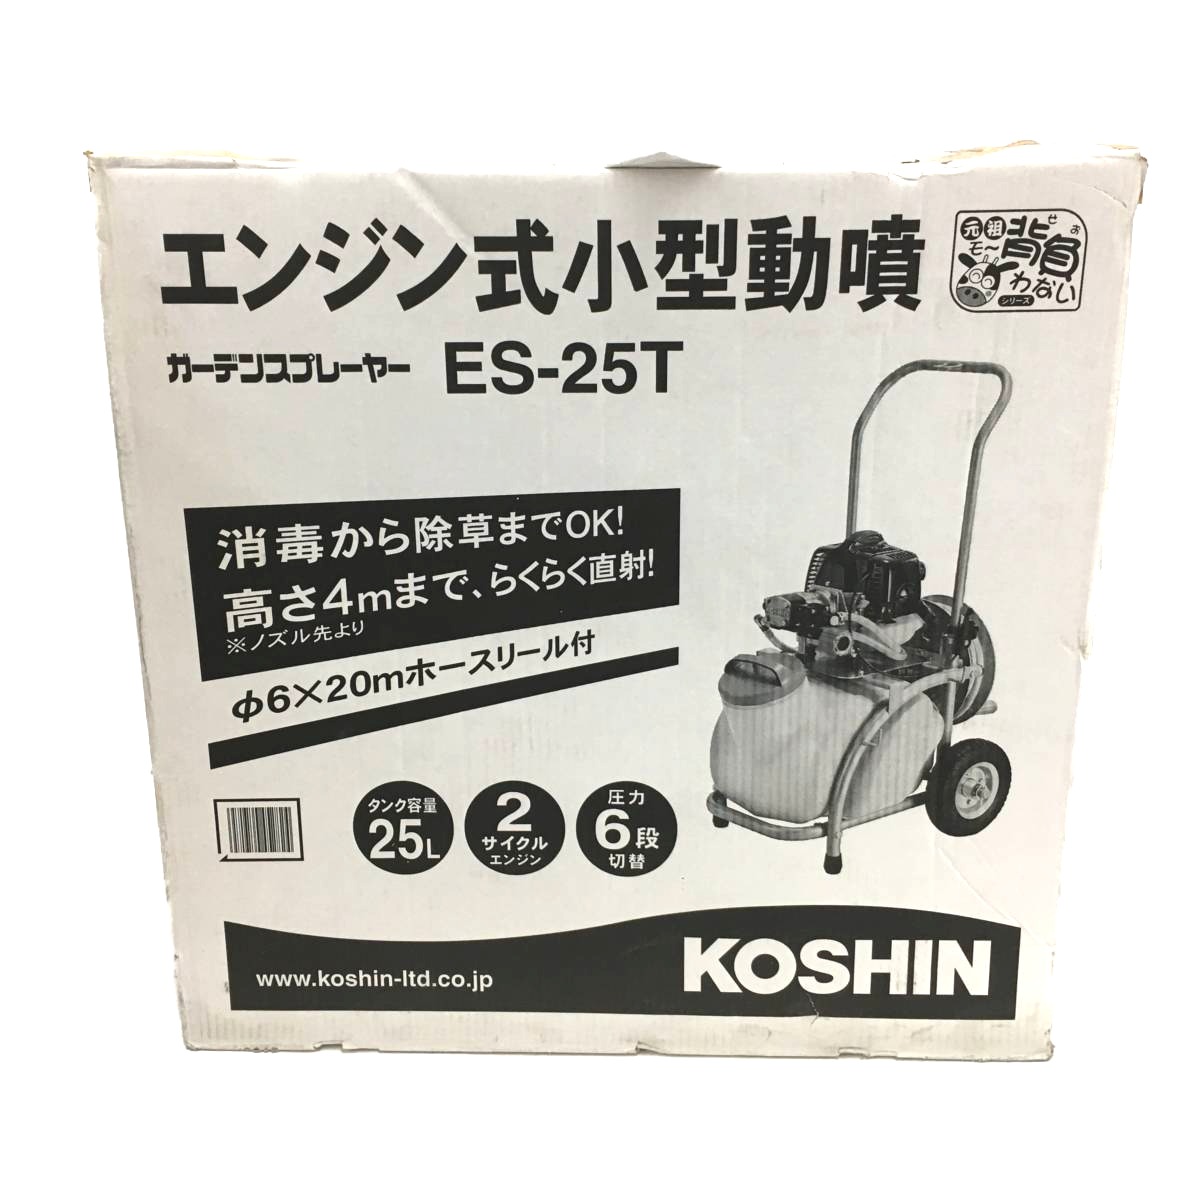 △△【中古】KOSHIN エンジン式小型動墳 ガーデンスプレーヤー ES-25T タンク容量25L Bランク